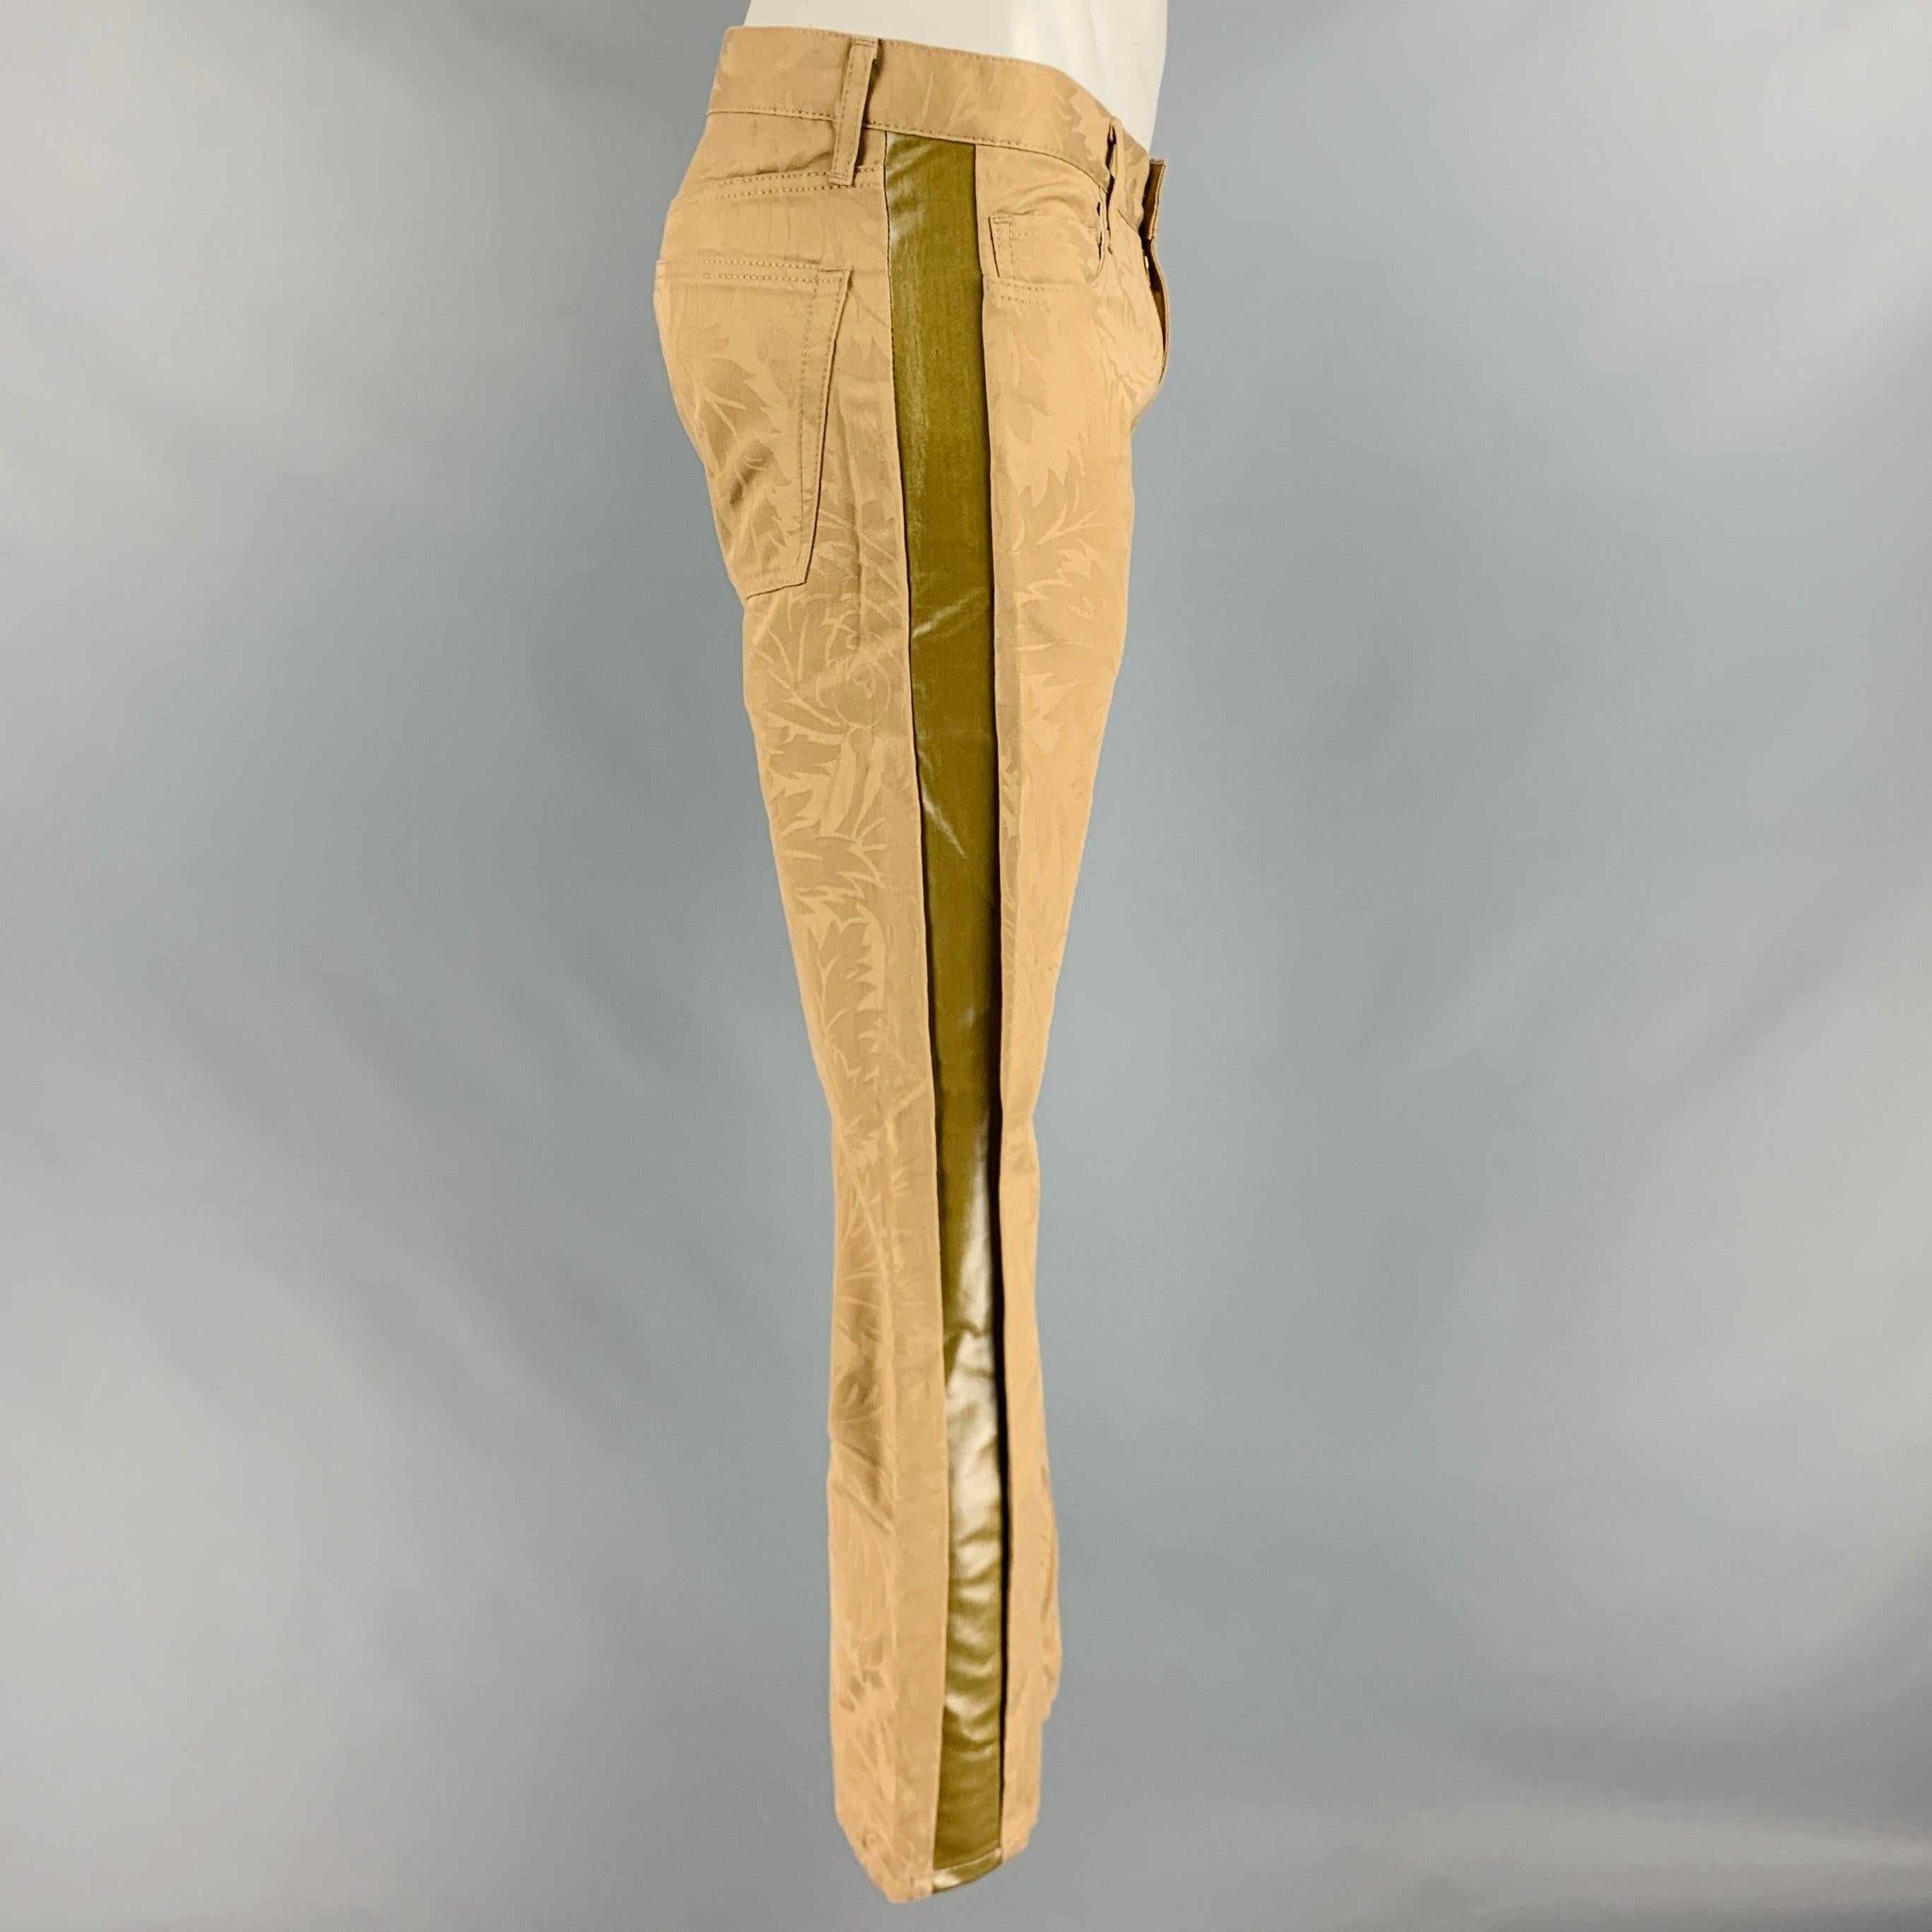 JUNYA WATANABE pantalon décontracté
en coton beige, avec une taille basse, un motif damassé, des rayures latérales et une fermeture à glissière. Fabriqué au Japon. Nouveau avec étiquettes. 

Marqué :   L 

Mesures : 
  Taille : 35 pouces Taille :